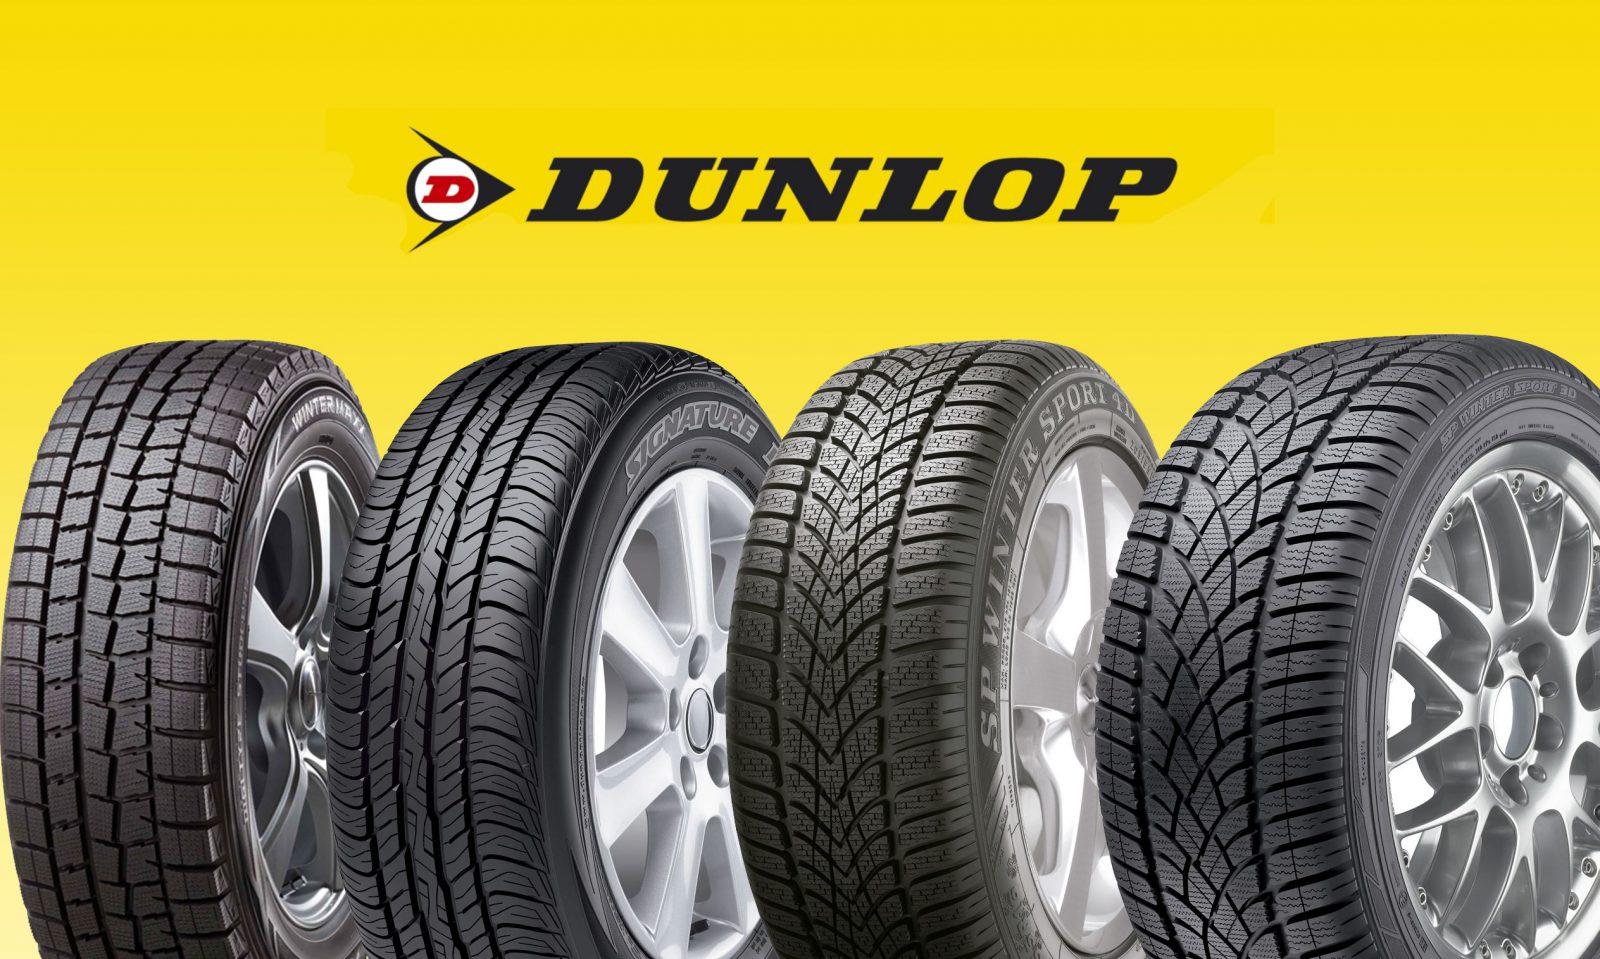 Dunlop tyres -Top 10 tyre brands